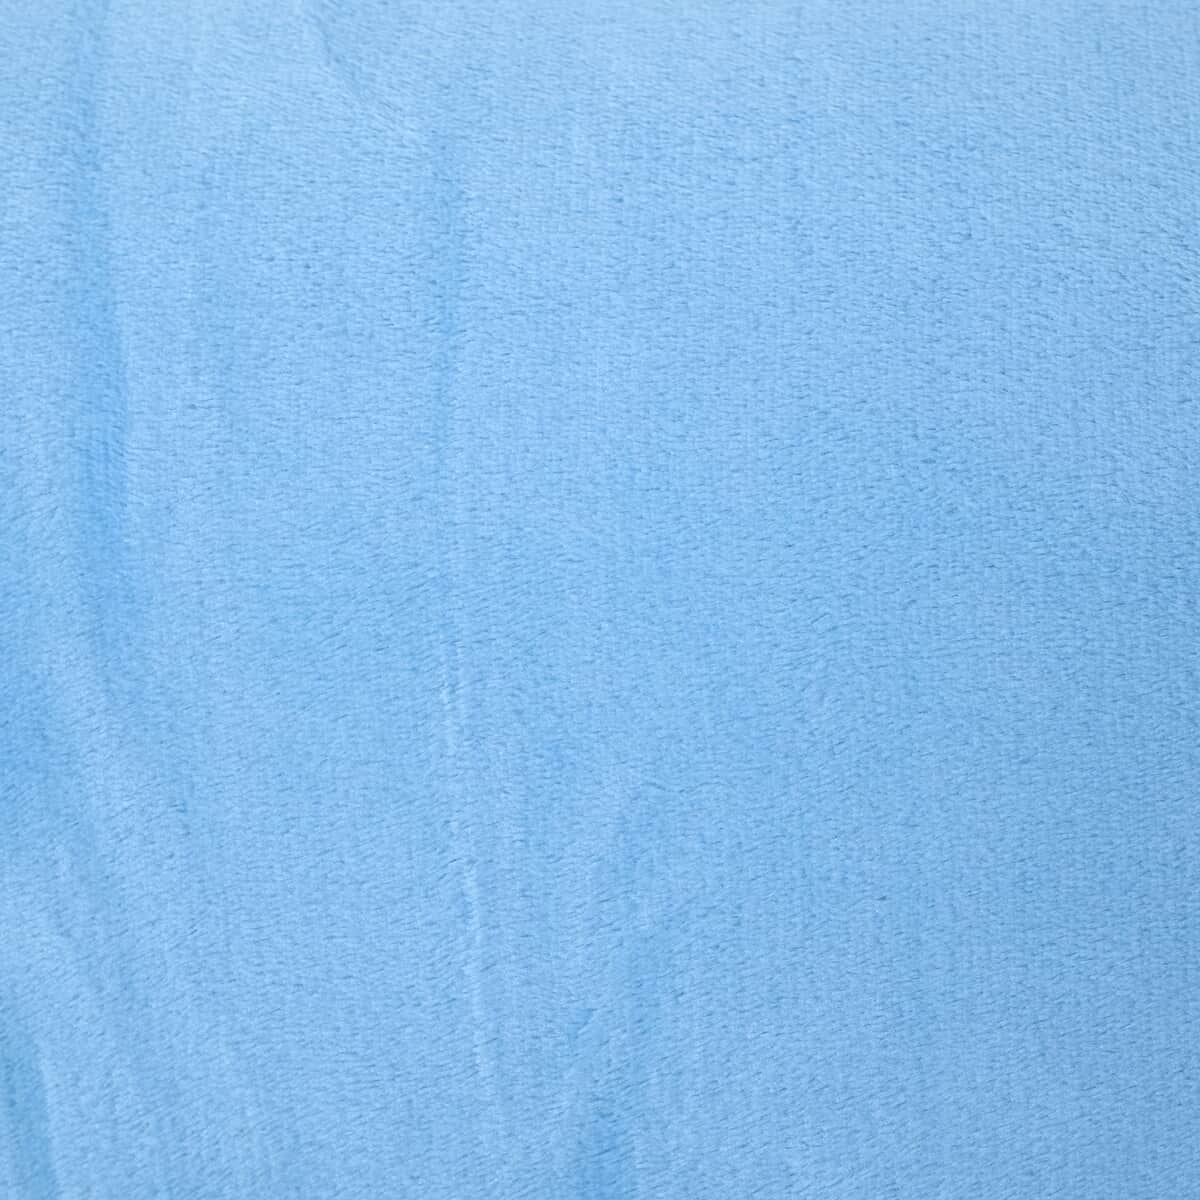 Homesmart Set of 2 Pink Bottom/Flower Pattern & Blue Solid Microfiber Flannel Blanket image number 3